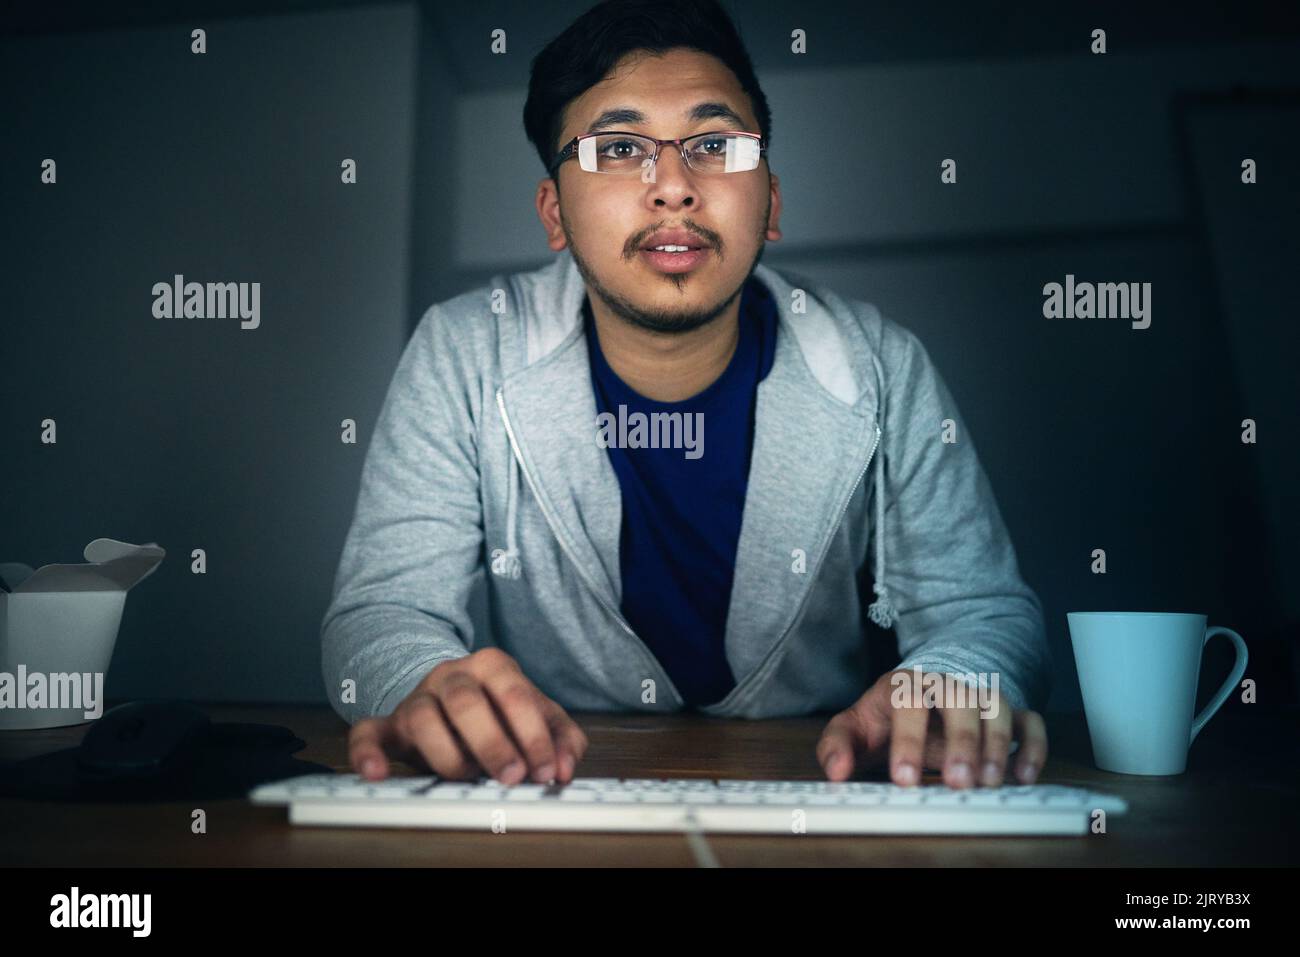 Codierung bis spät in die Nacht. Ein junger Mann, der spät in der Nacht an seinem Computer arbeitet. Stockfoto